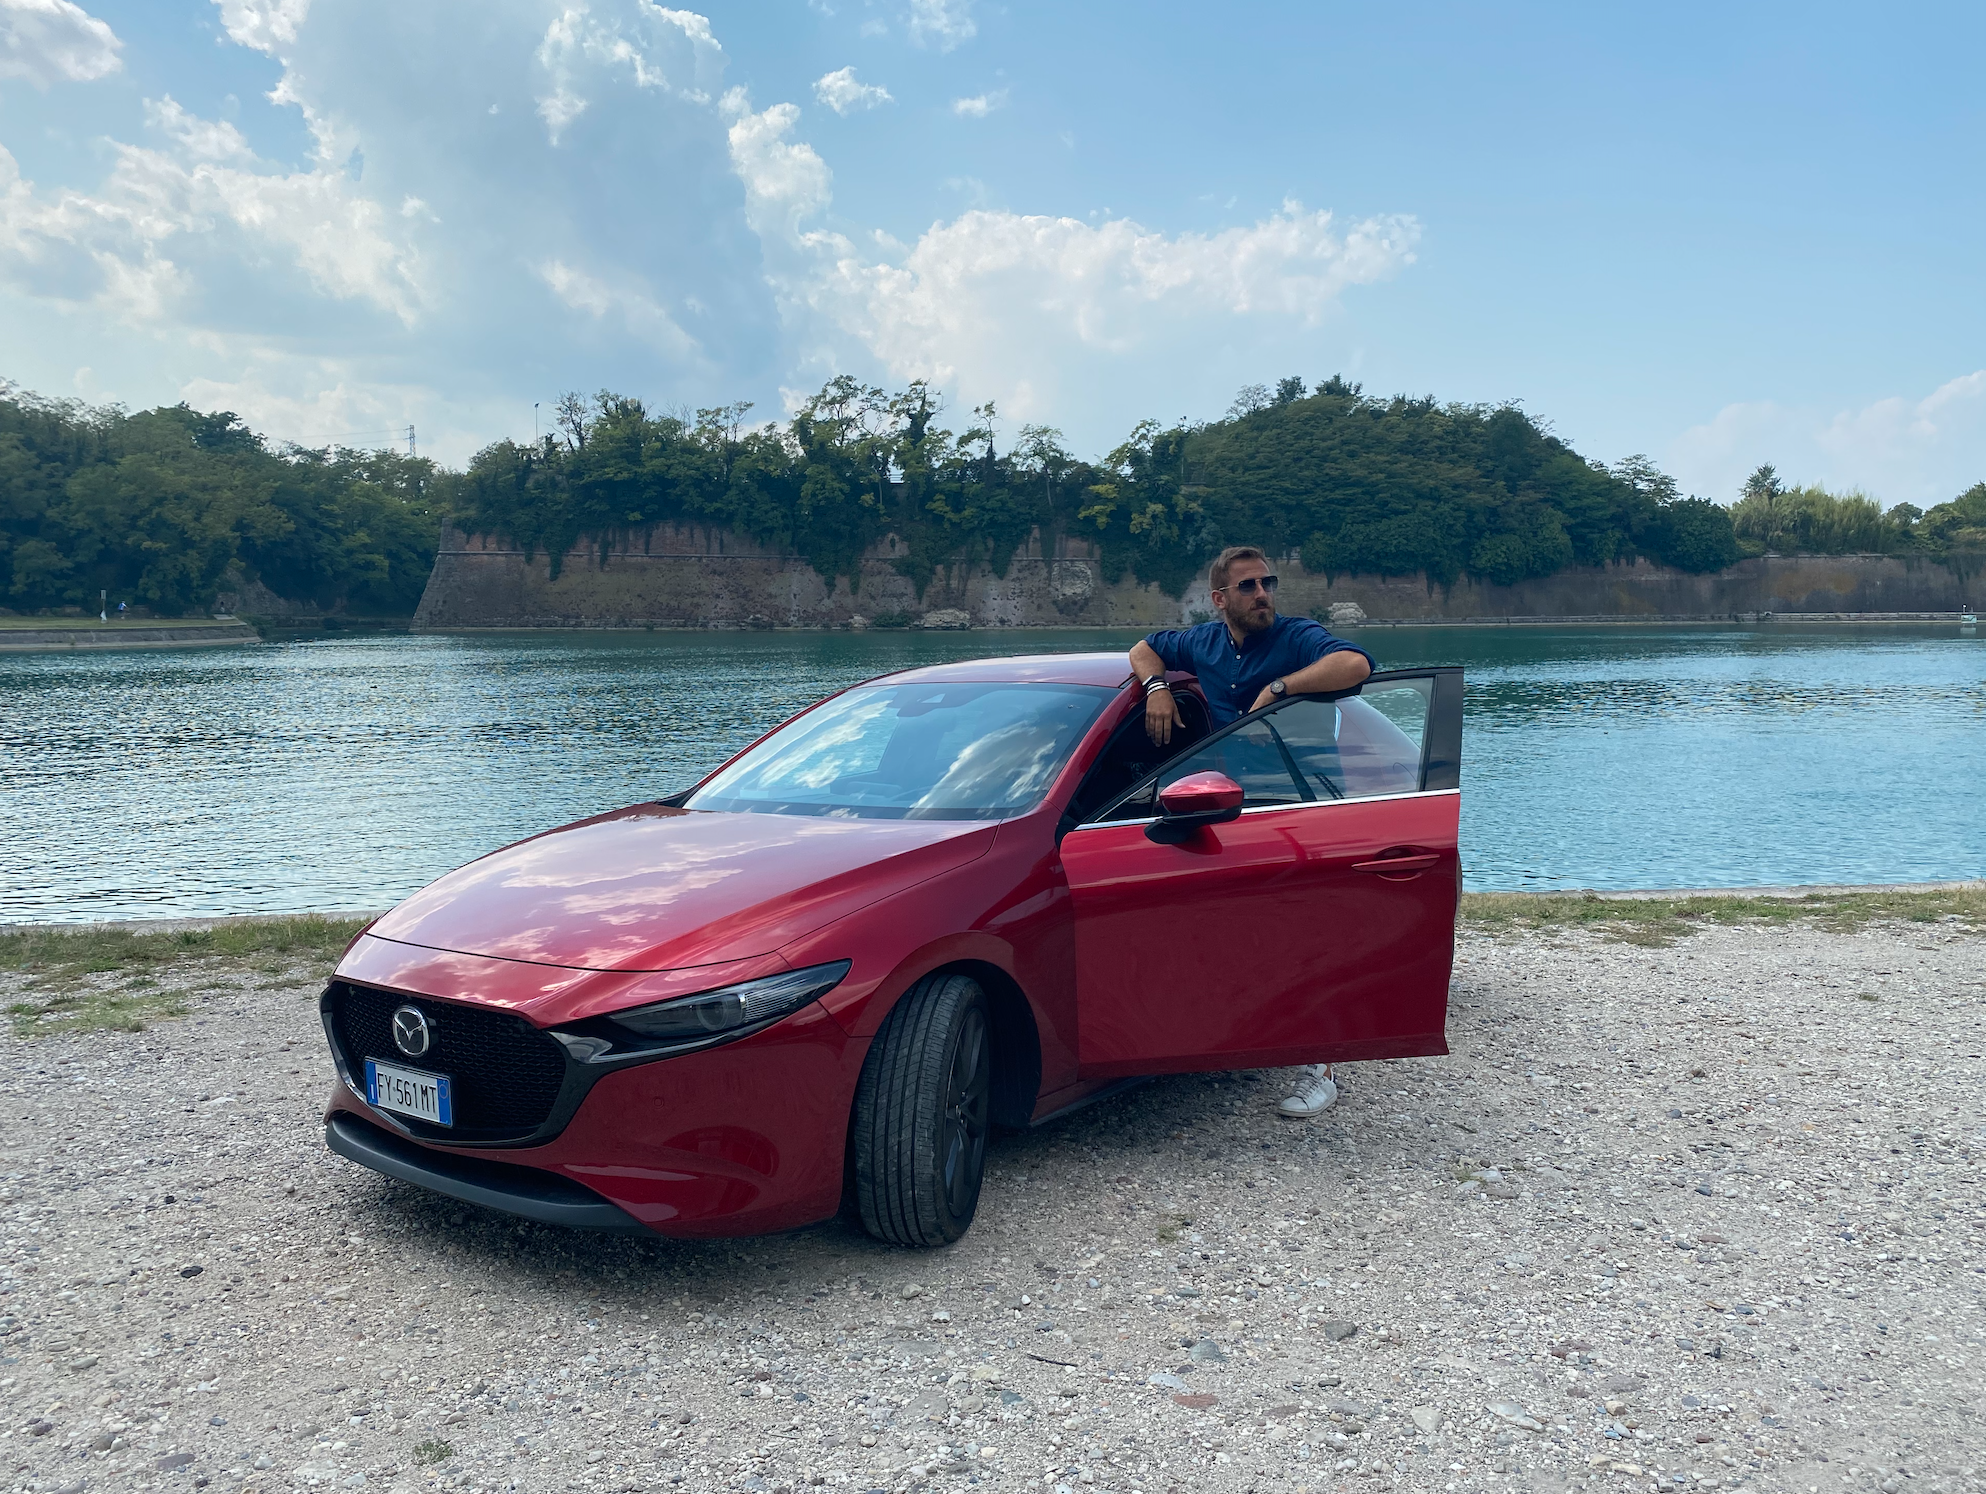 La nuova Mazda 3 è un’auto che emoziona